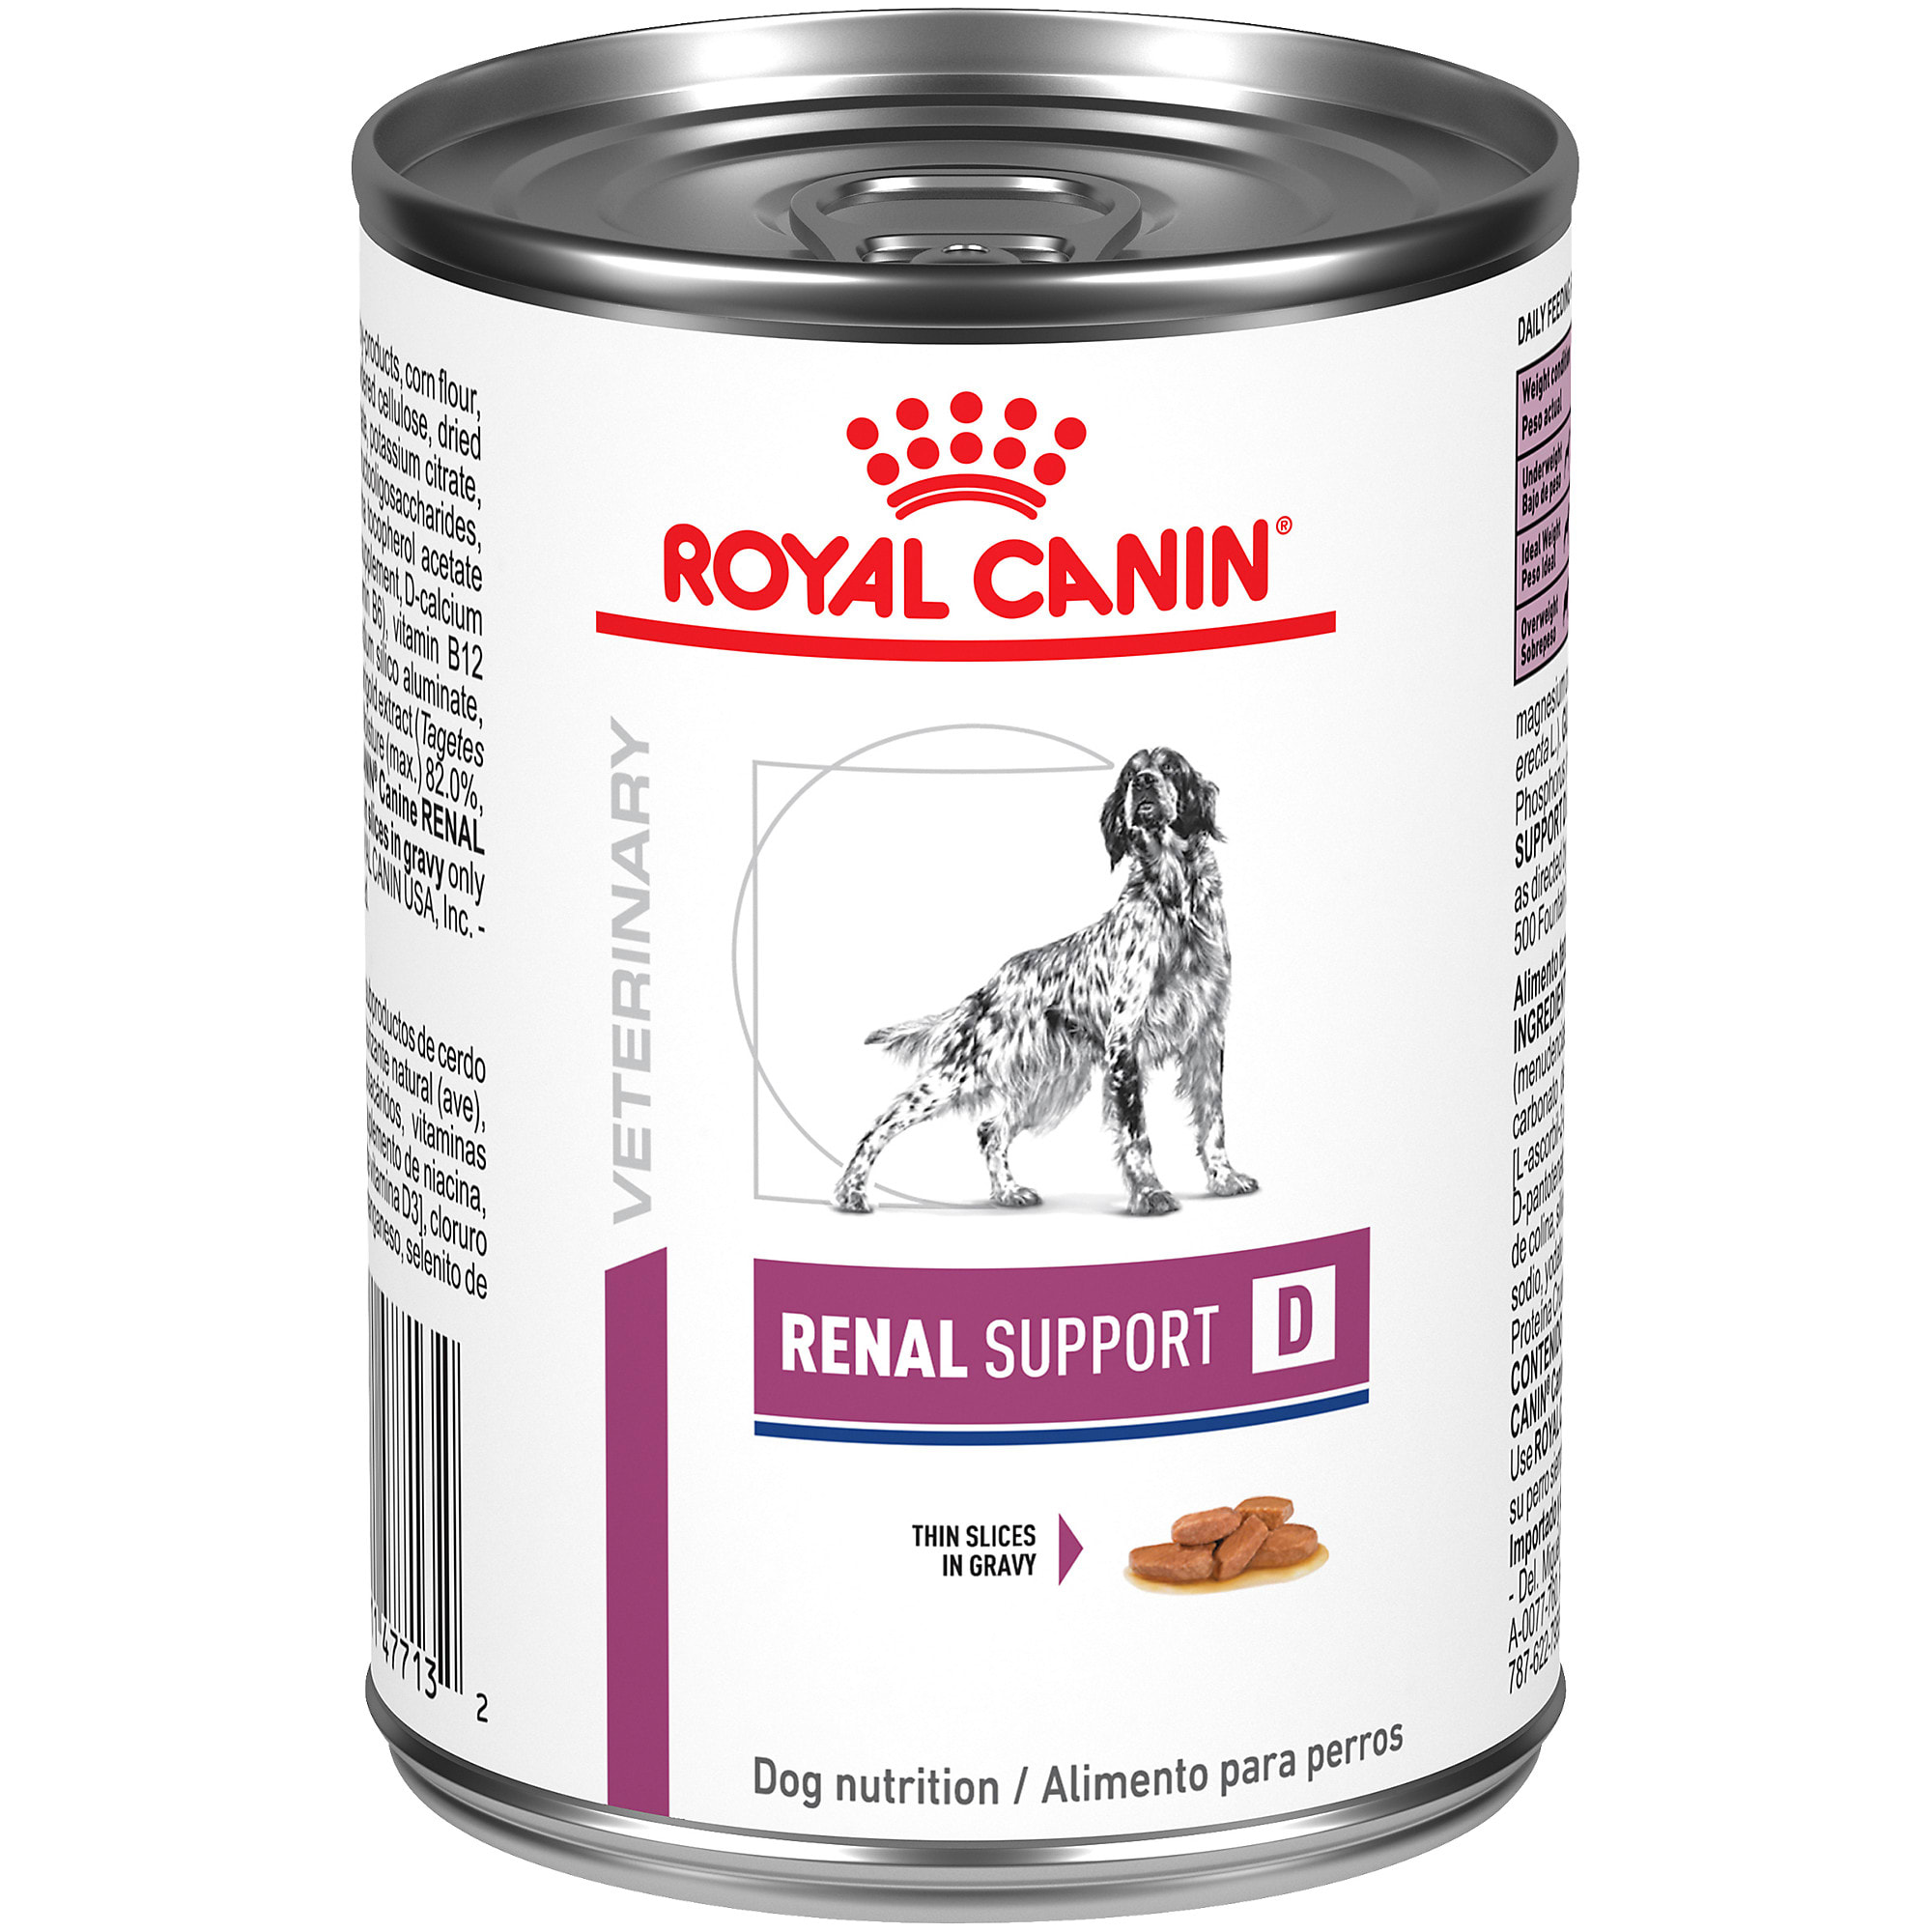 Gedeeltelijk ijs Ik zie je morgen Royal Canin Veterinary Diet Renal Support D Thin Slices in Gravy Canned Wet  Dog Food, 13 oz., Case of 24 | Petco